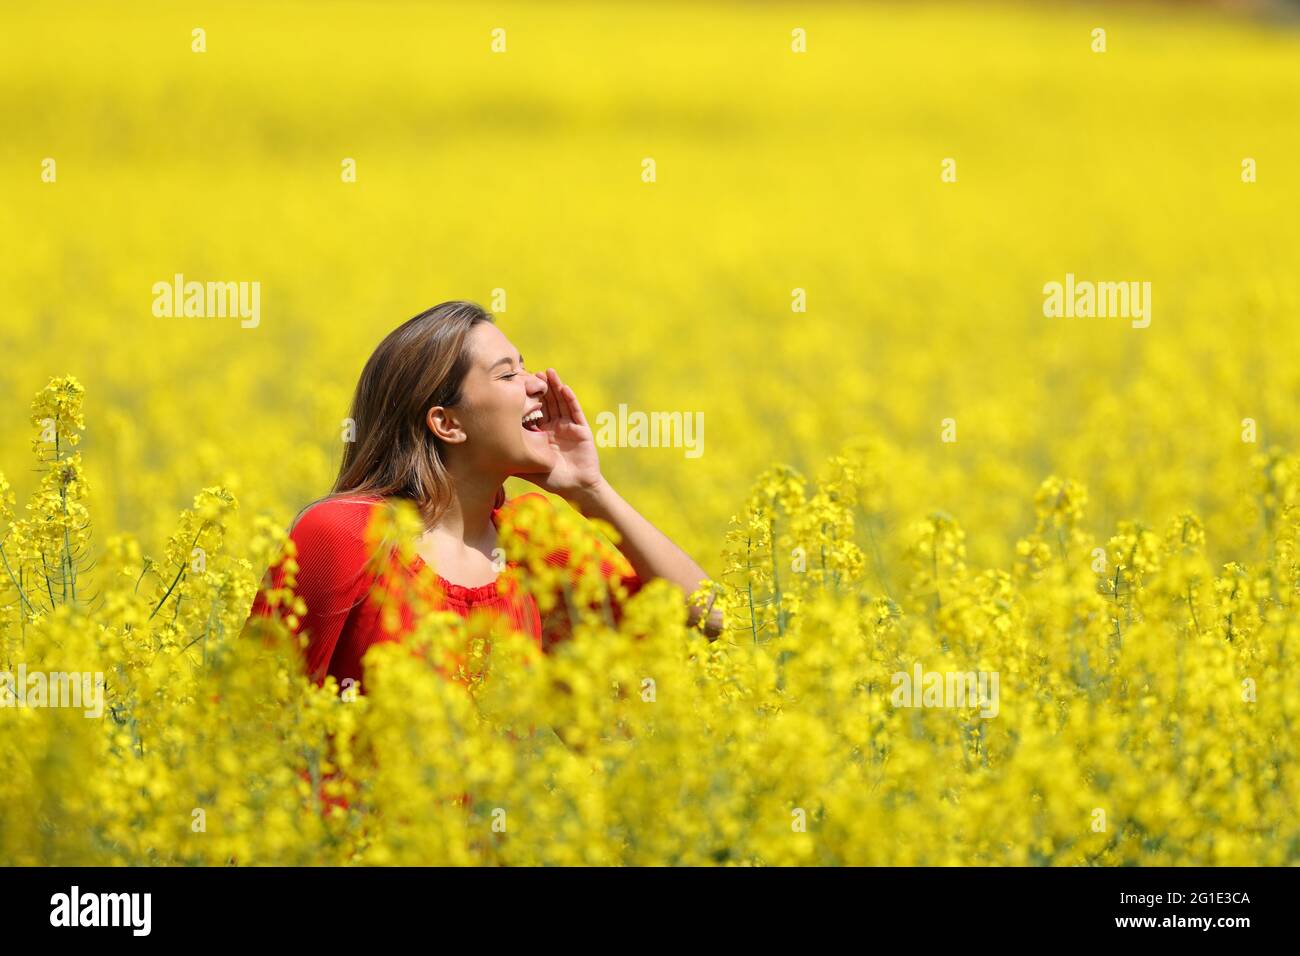 Vista laterale ritratto di una donna felice in rosso urlando in un campo giallo nella stagione primaverile Foto Stock